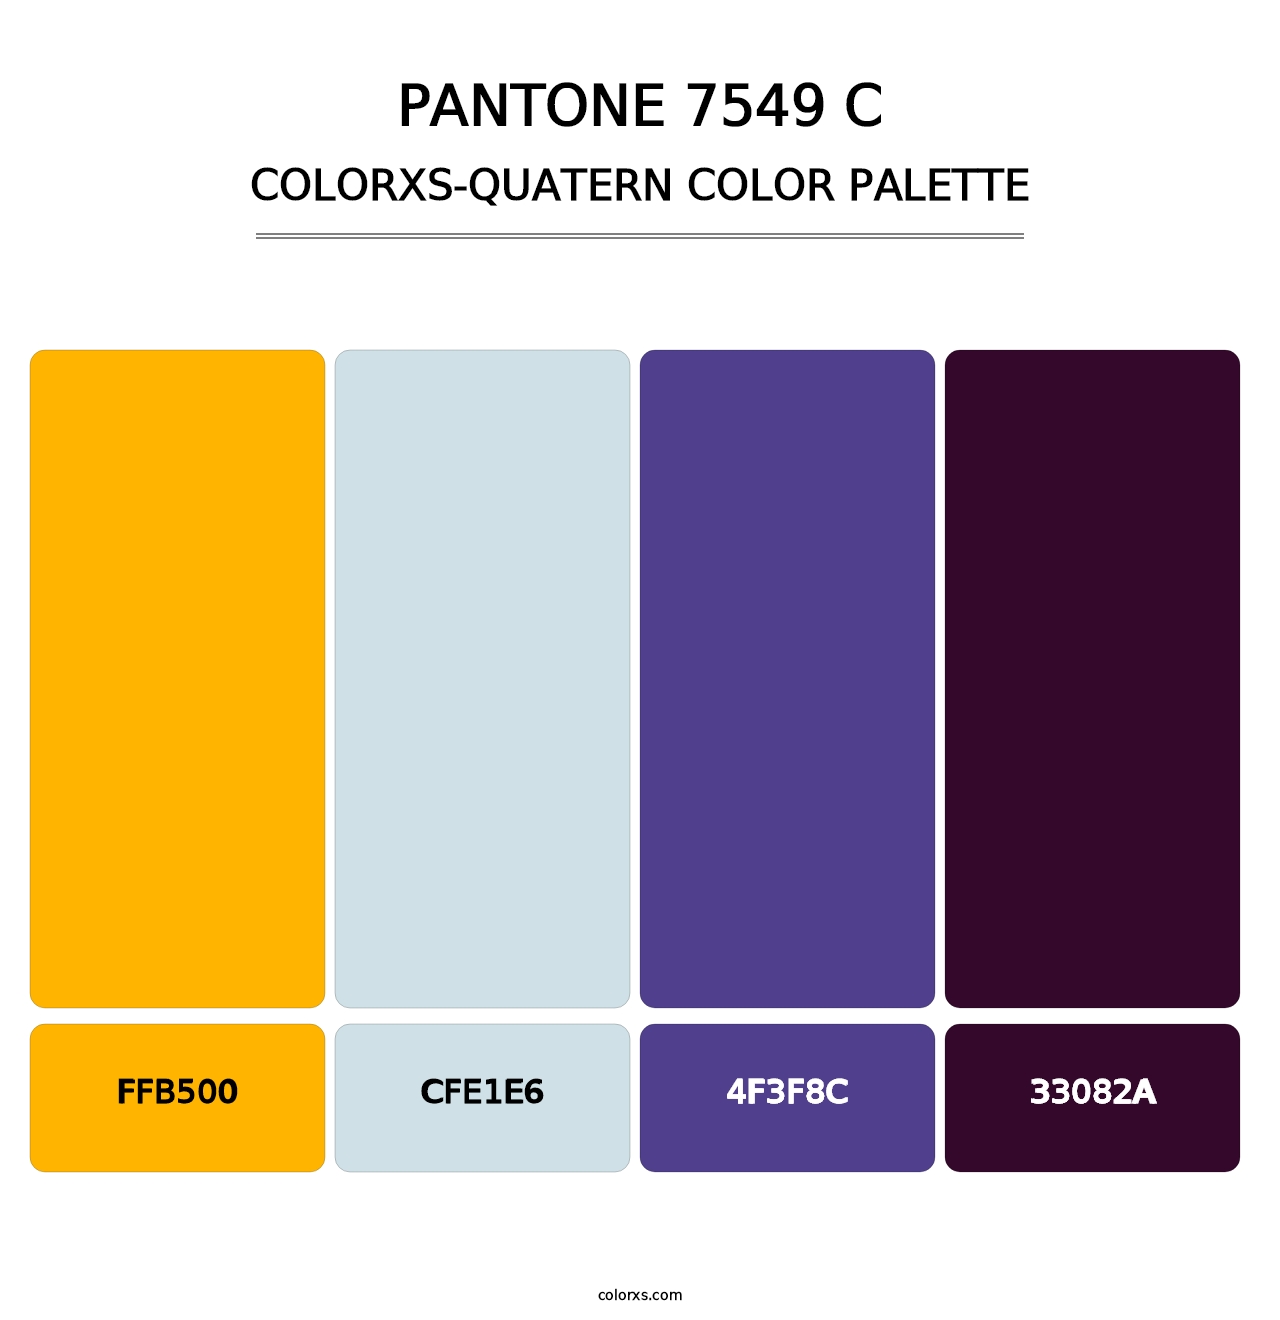 PANTONE 7549 C - Colorxs Quatern Palette